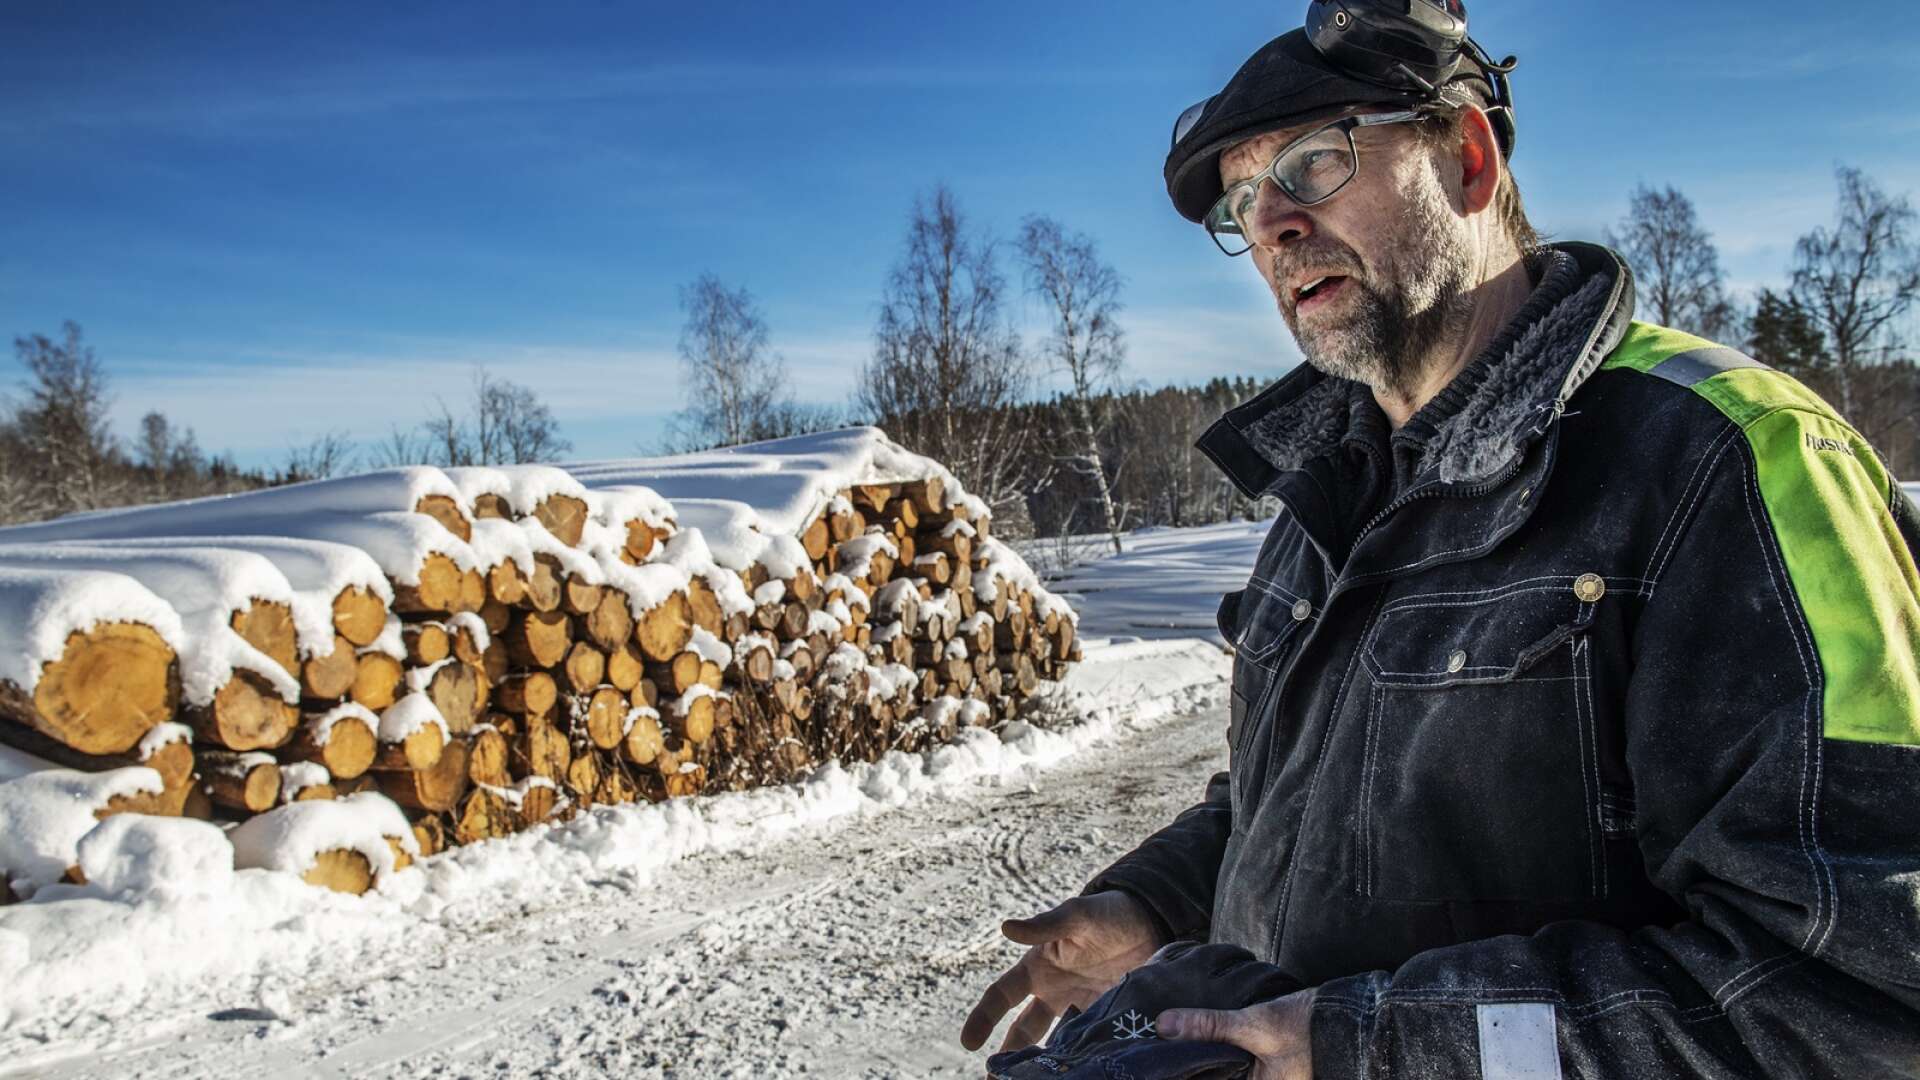 ”Det blir en klart tuff smäll för mig om jag inte får bruka min skog, men det blir också en tuff smäll för hela Sveriges landsbygd om skogsbruket ska minska drastiskt”, säger Anders Bengtsson.